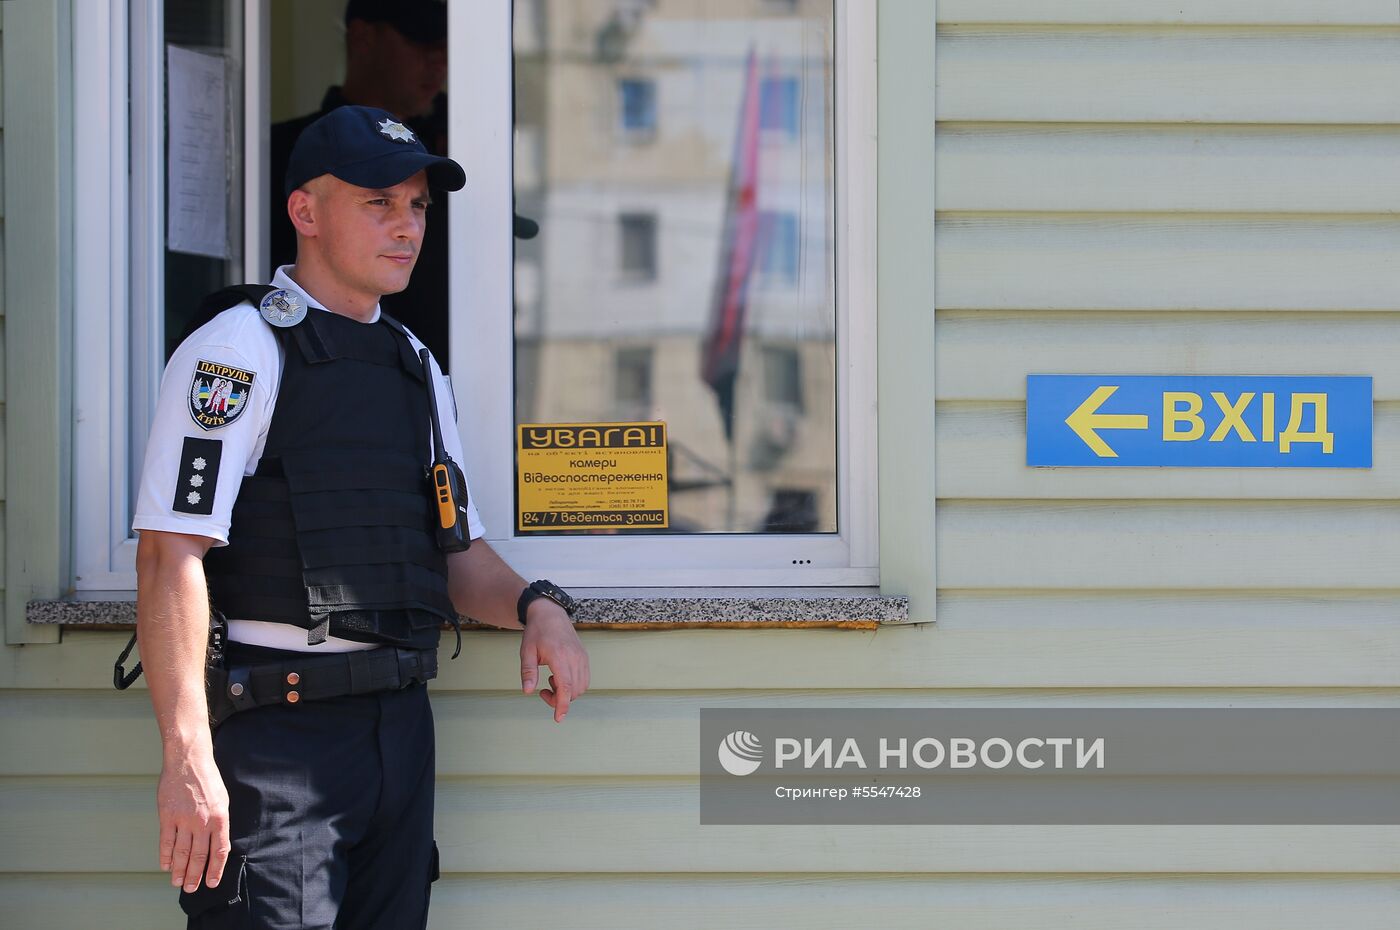 Акция в Киеве с требованием отставки главы полиции Украины